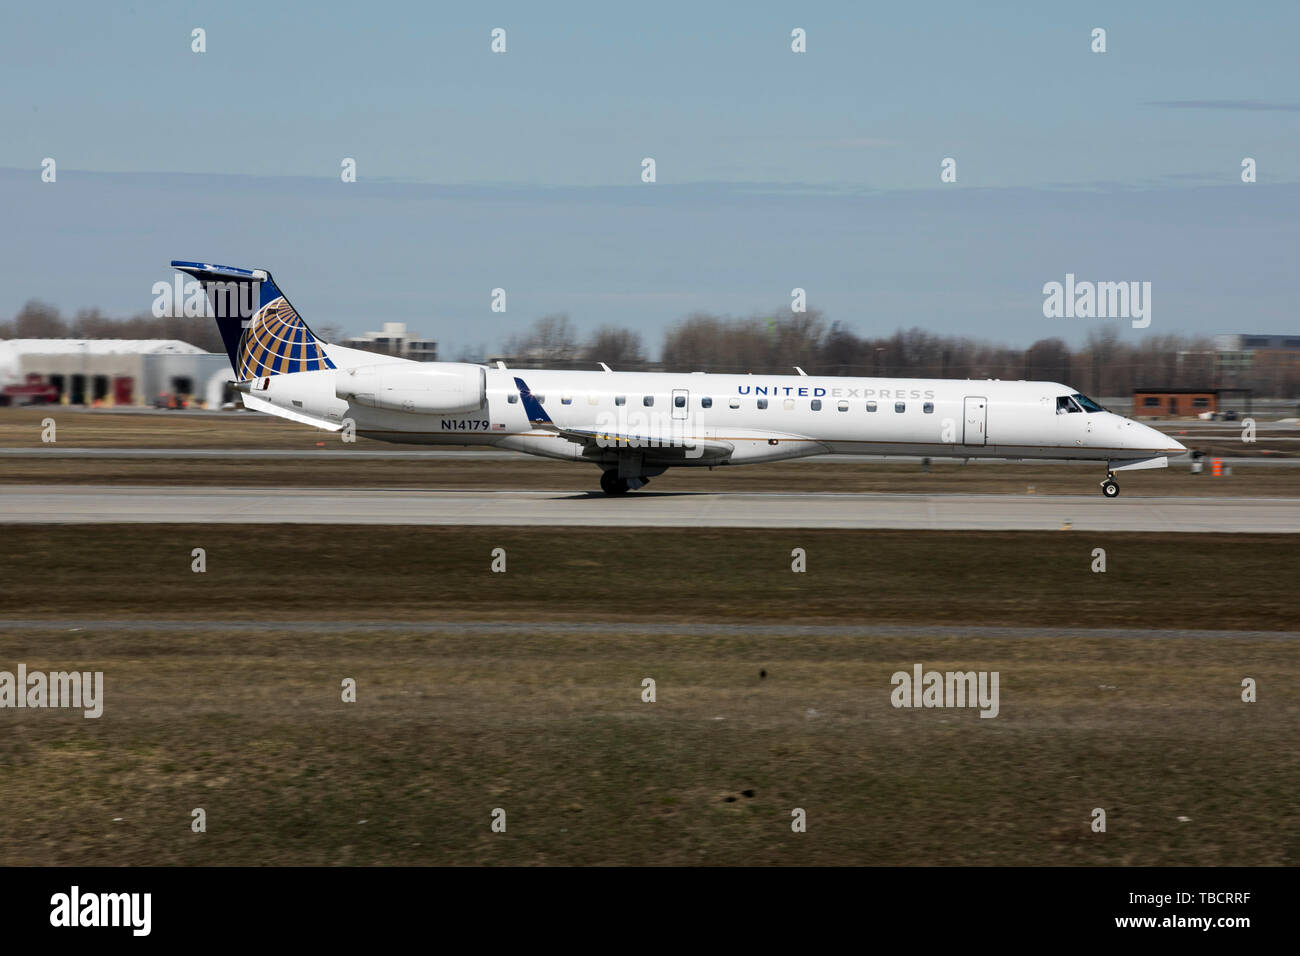 Un United Express Embraer ERJ145 avion est vu au départ de l'aéroport international Pierre-Elliott-Trudeau de Montréal, Québec, Canada, en avril Banque D'Images